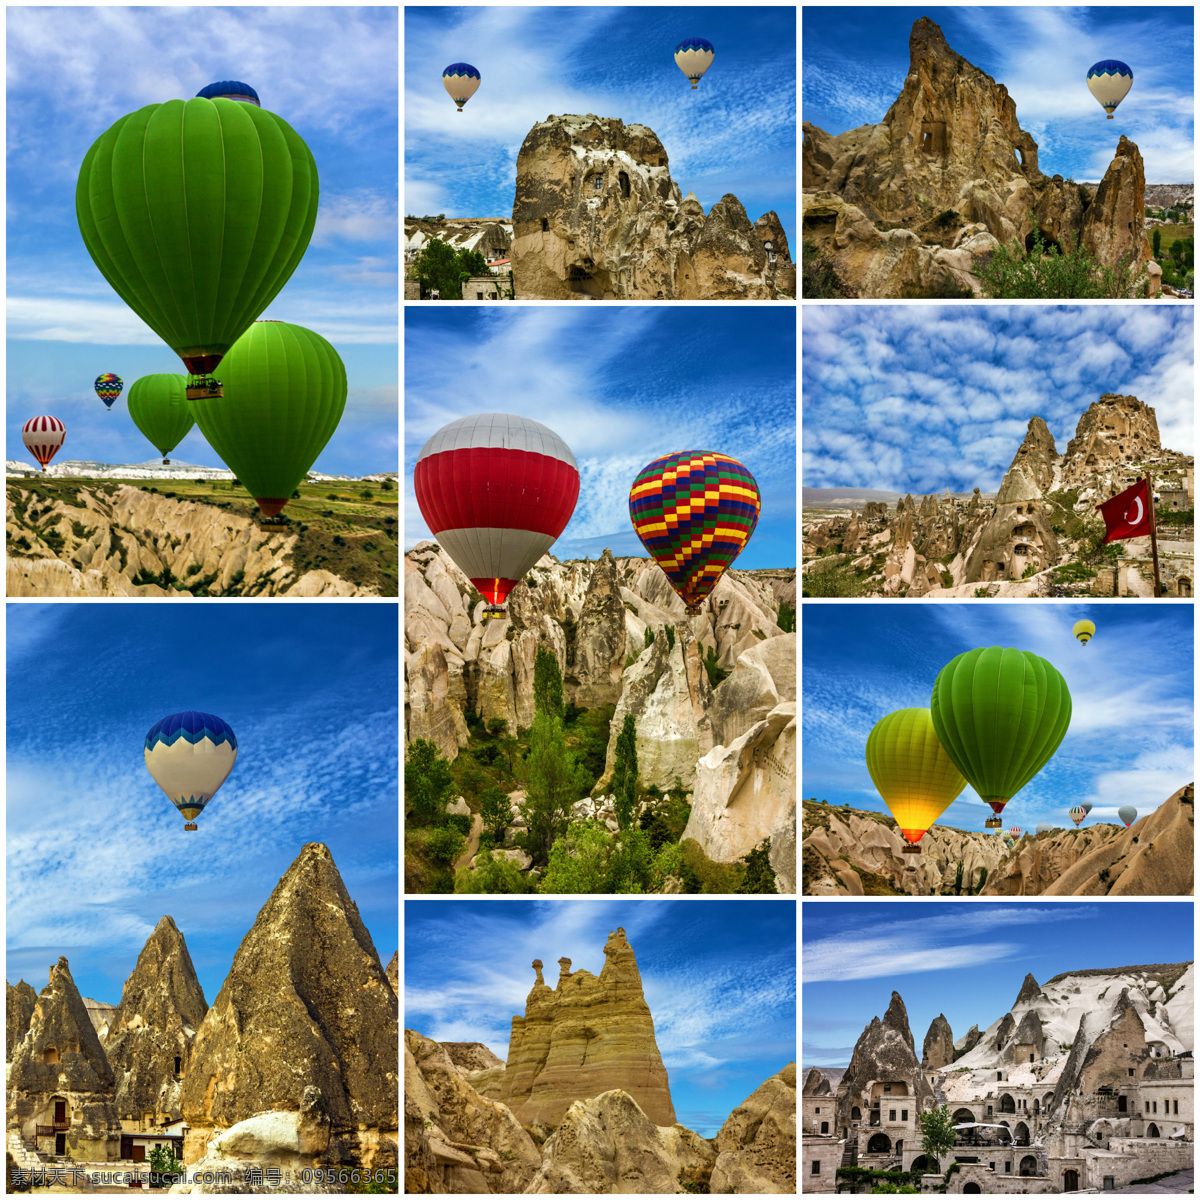 卡 帕多 西亚 上空 热气球 卡帕多西亚 土耳其风光 土耳其 旅游景点 美丽风景 美丽景色 美景 蓝天 天空 其他类别 生活百科